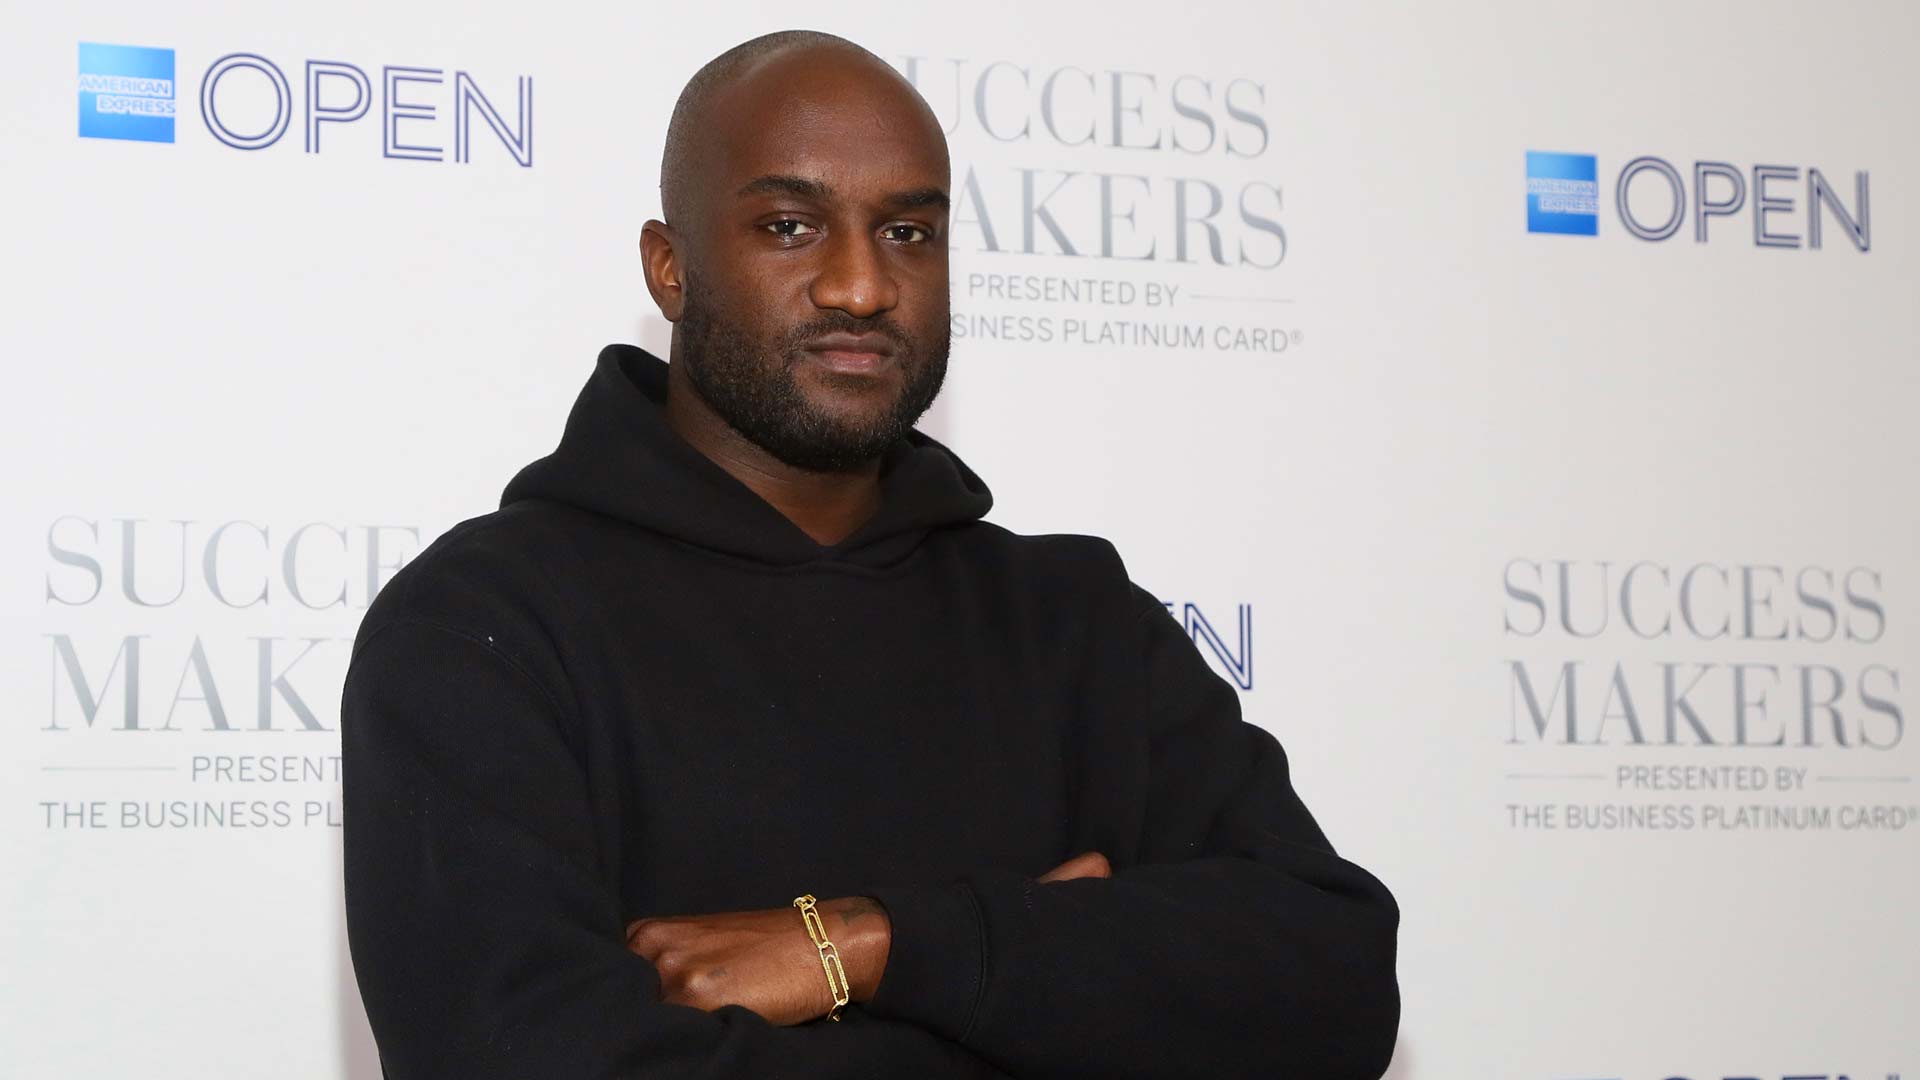 El consejero creativo de Kanye West, nombrado nuevo director artístico de Louis Vuitton hombre